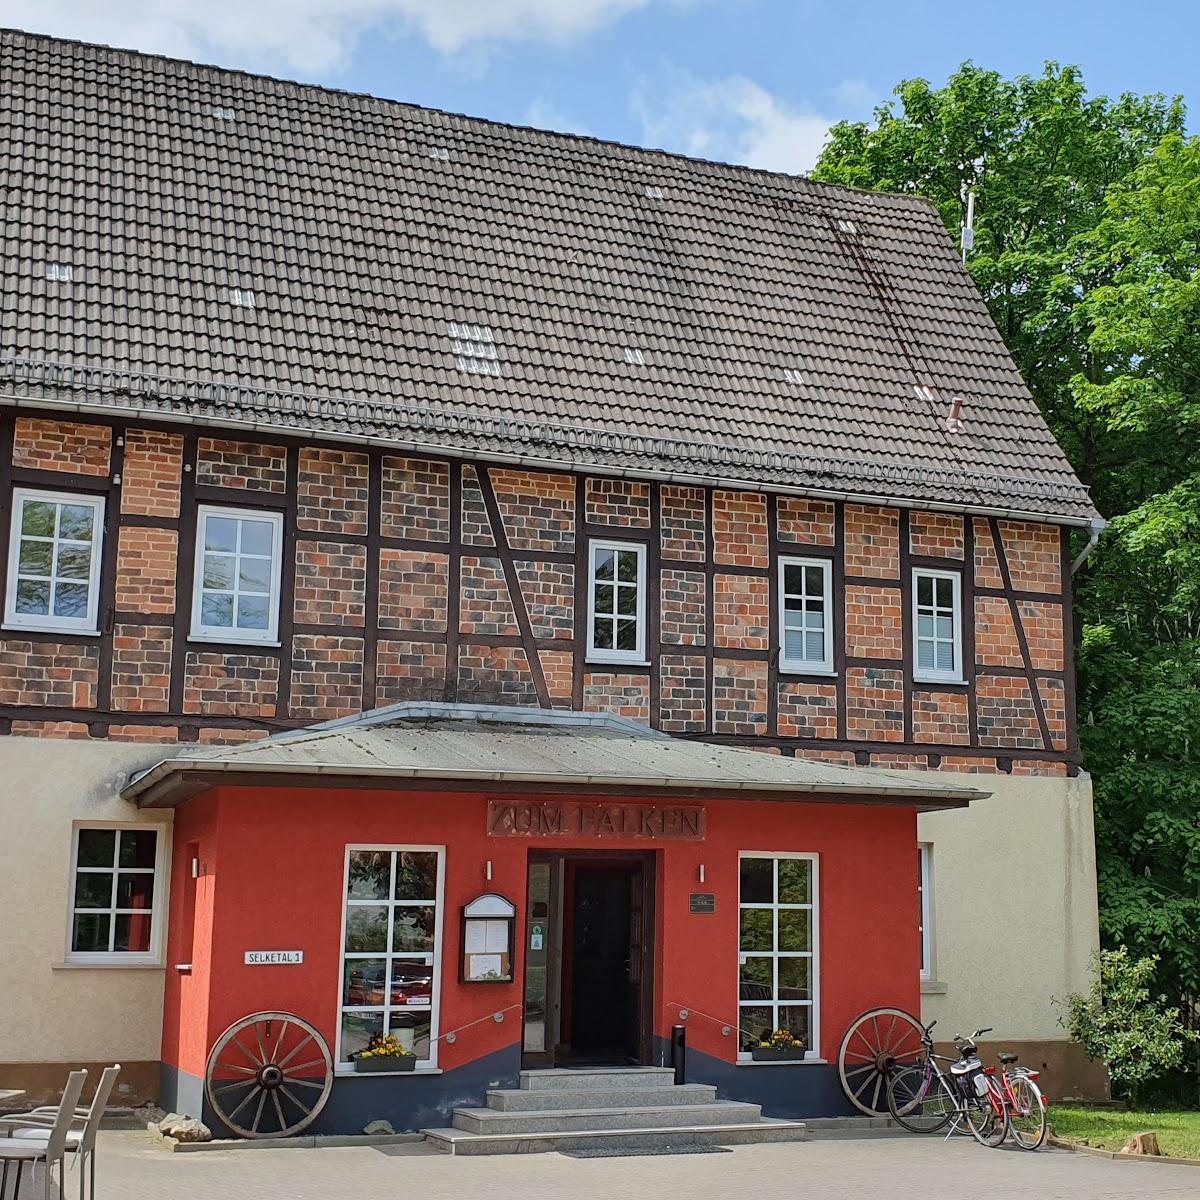 Restaurant "Hotel zum Falken" in Falkenstein-Harz